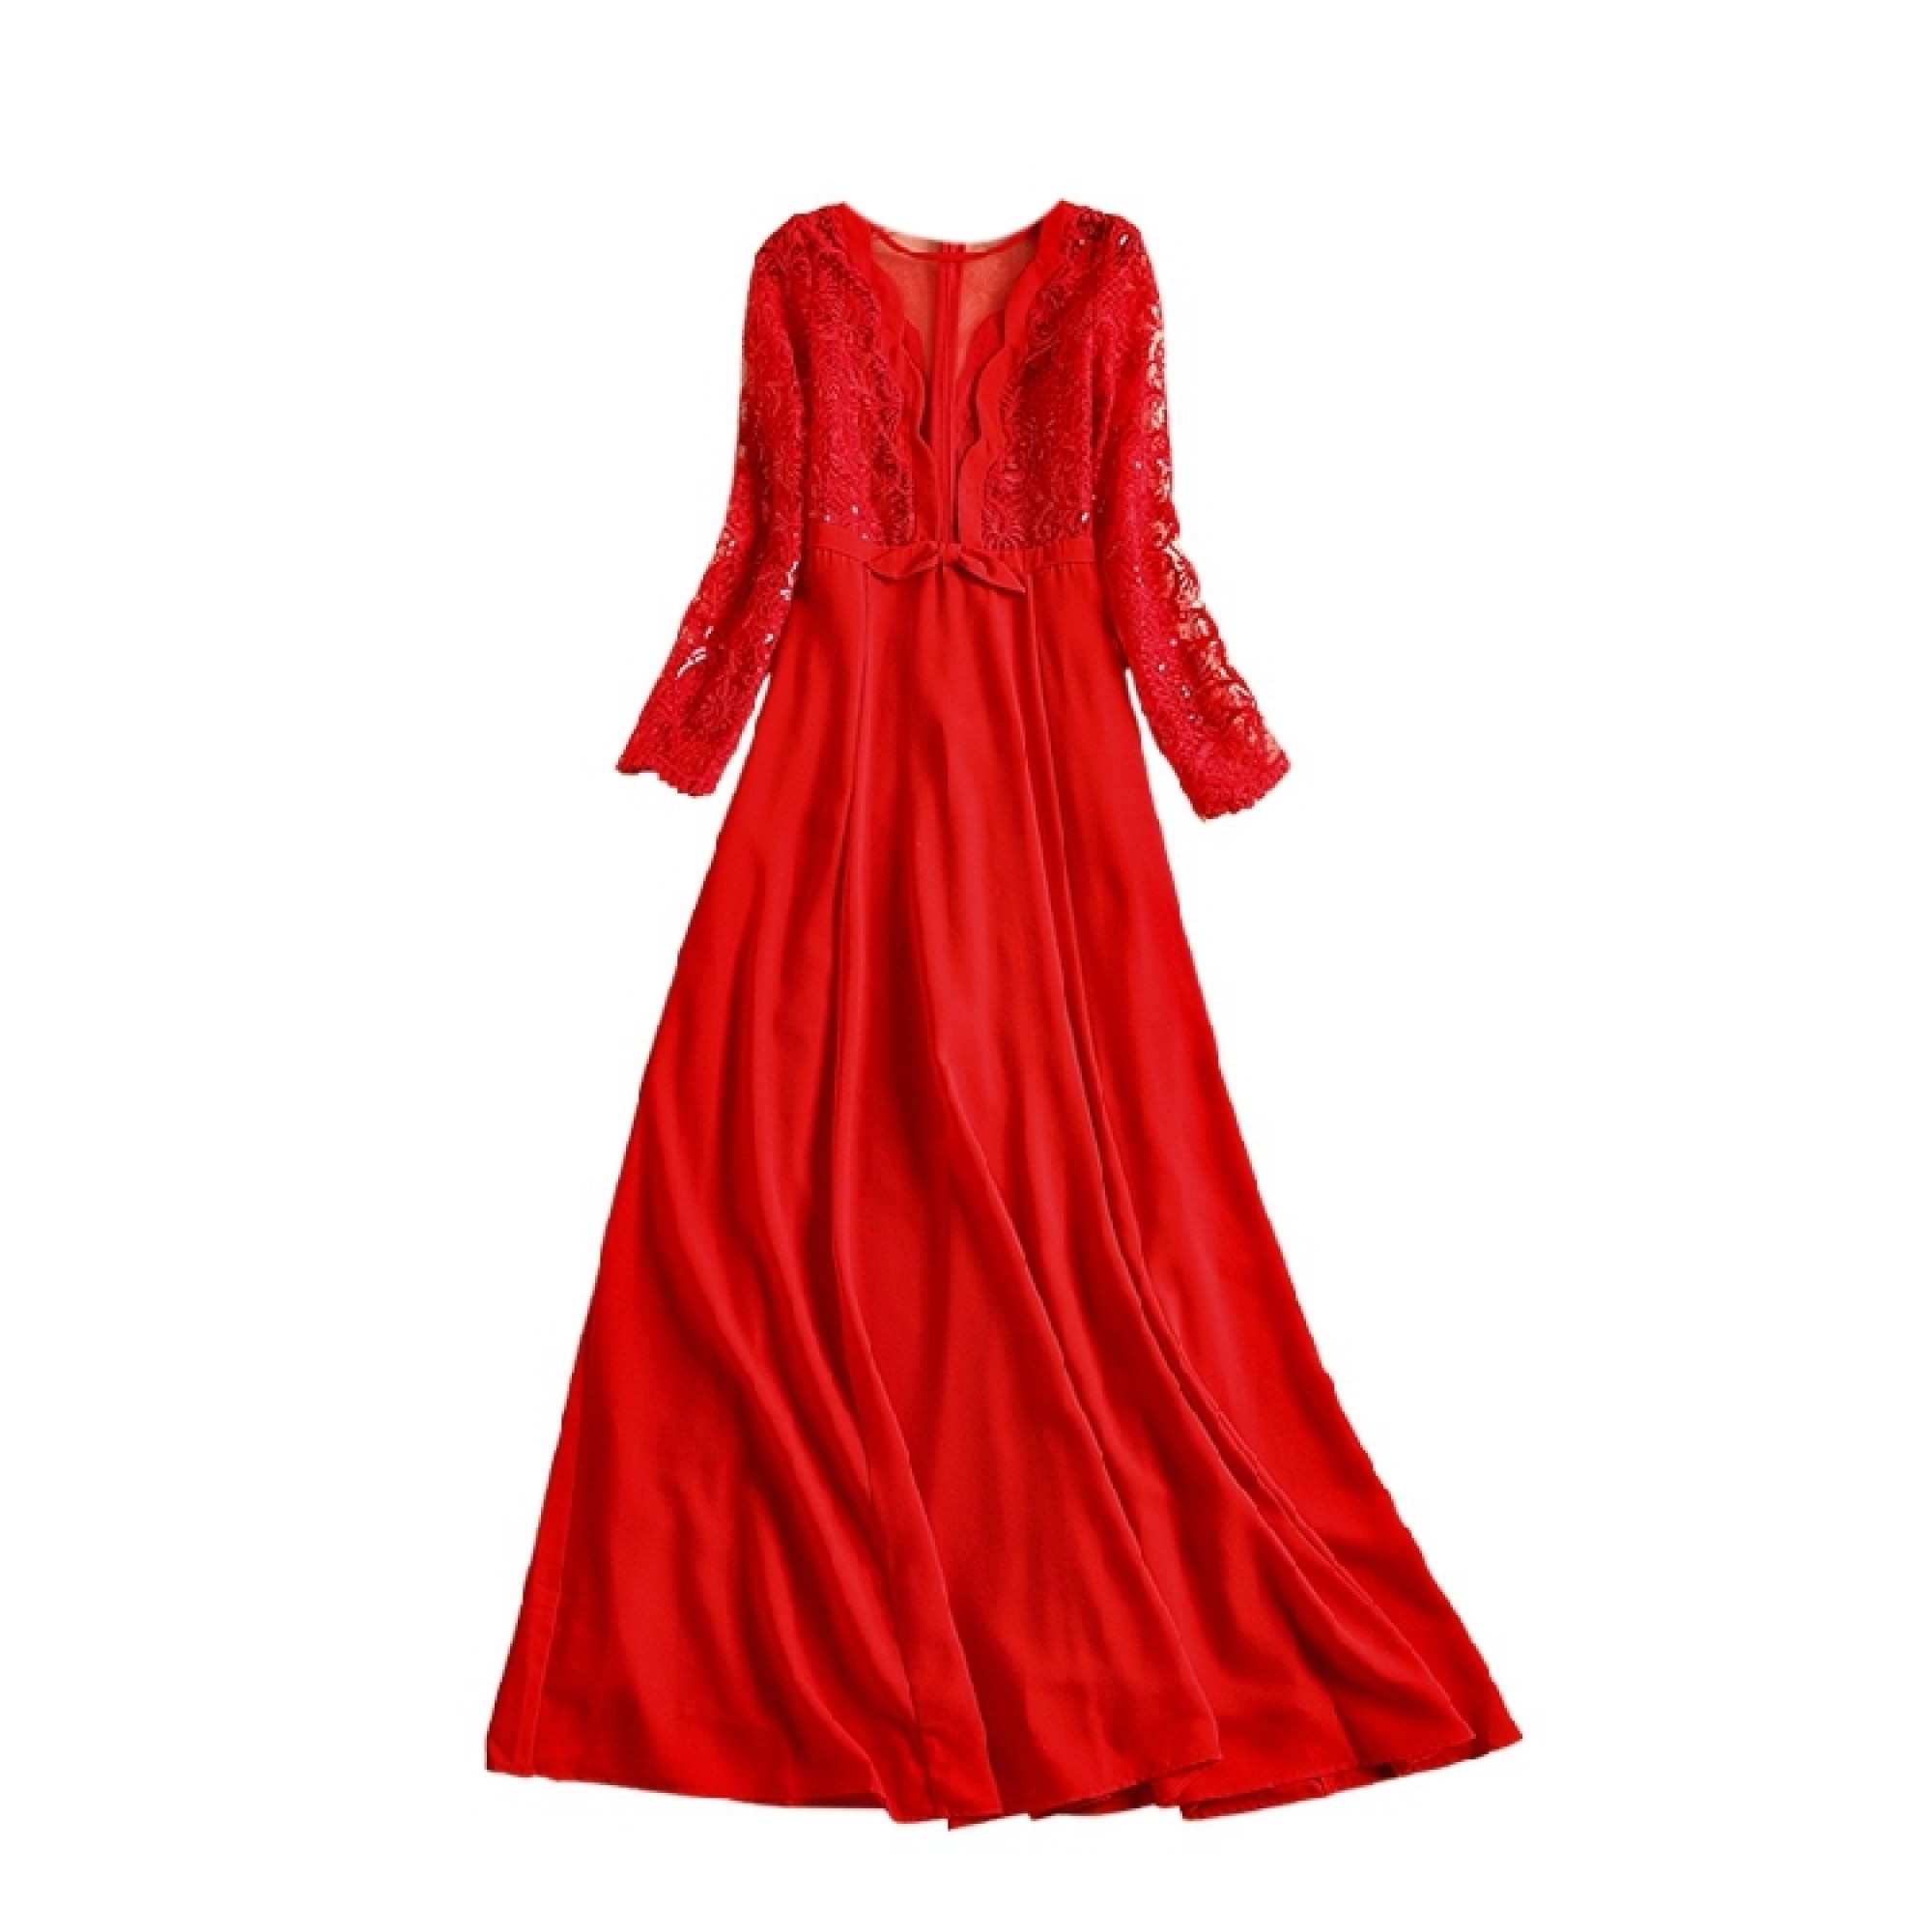 Купить Платье Валентино В Интернет Магазине